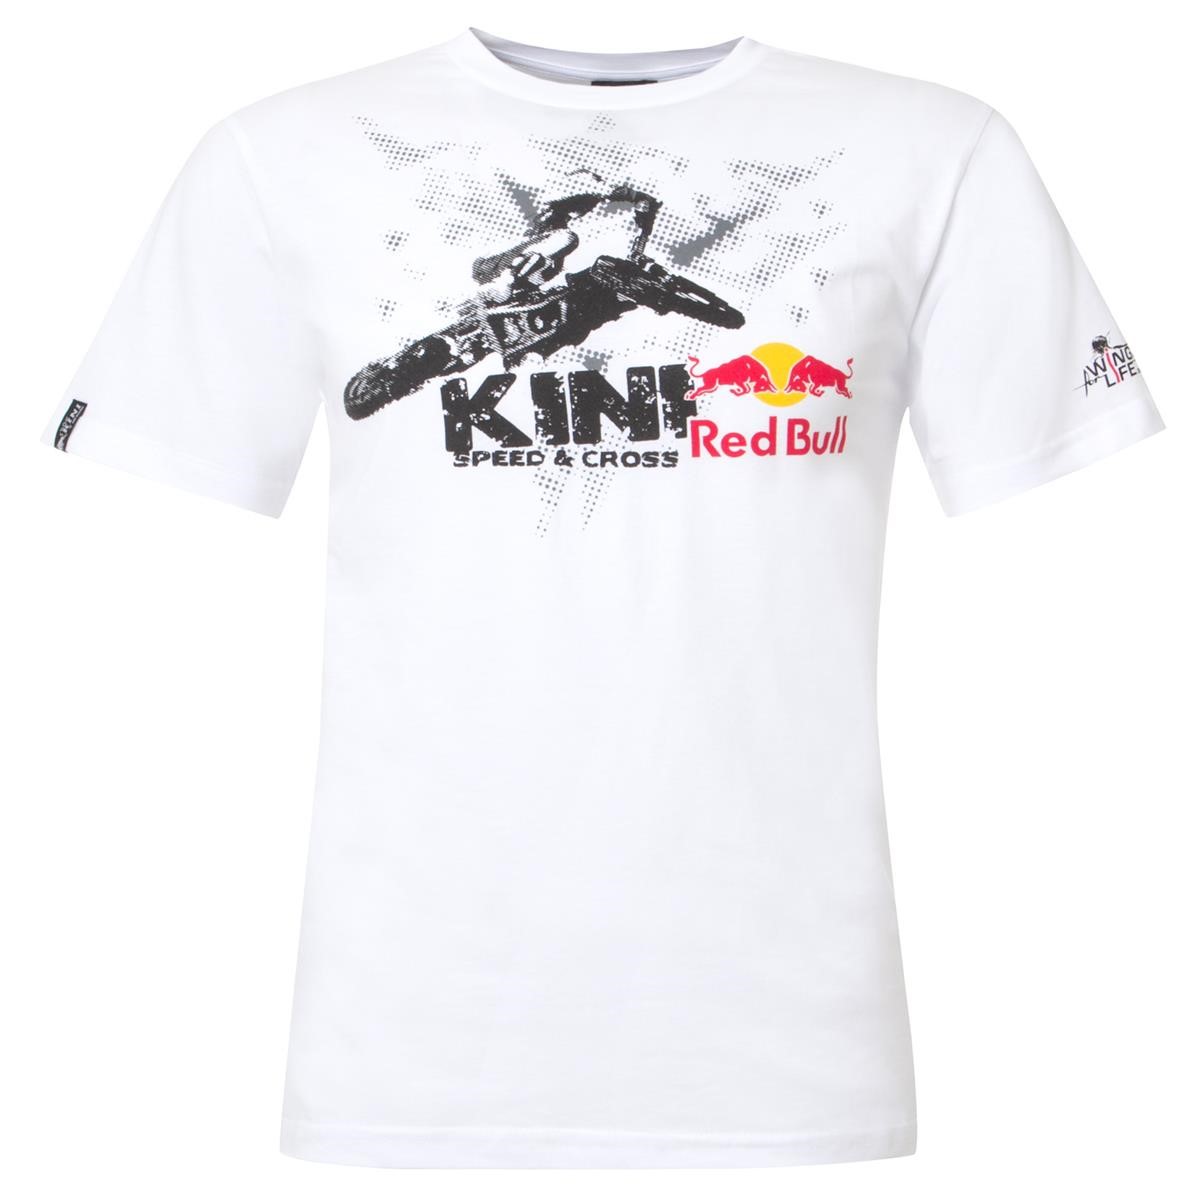 Kini Red Bull T-Shirt Speedcross White